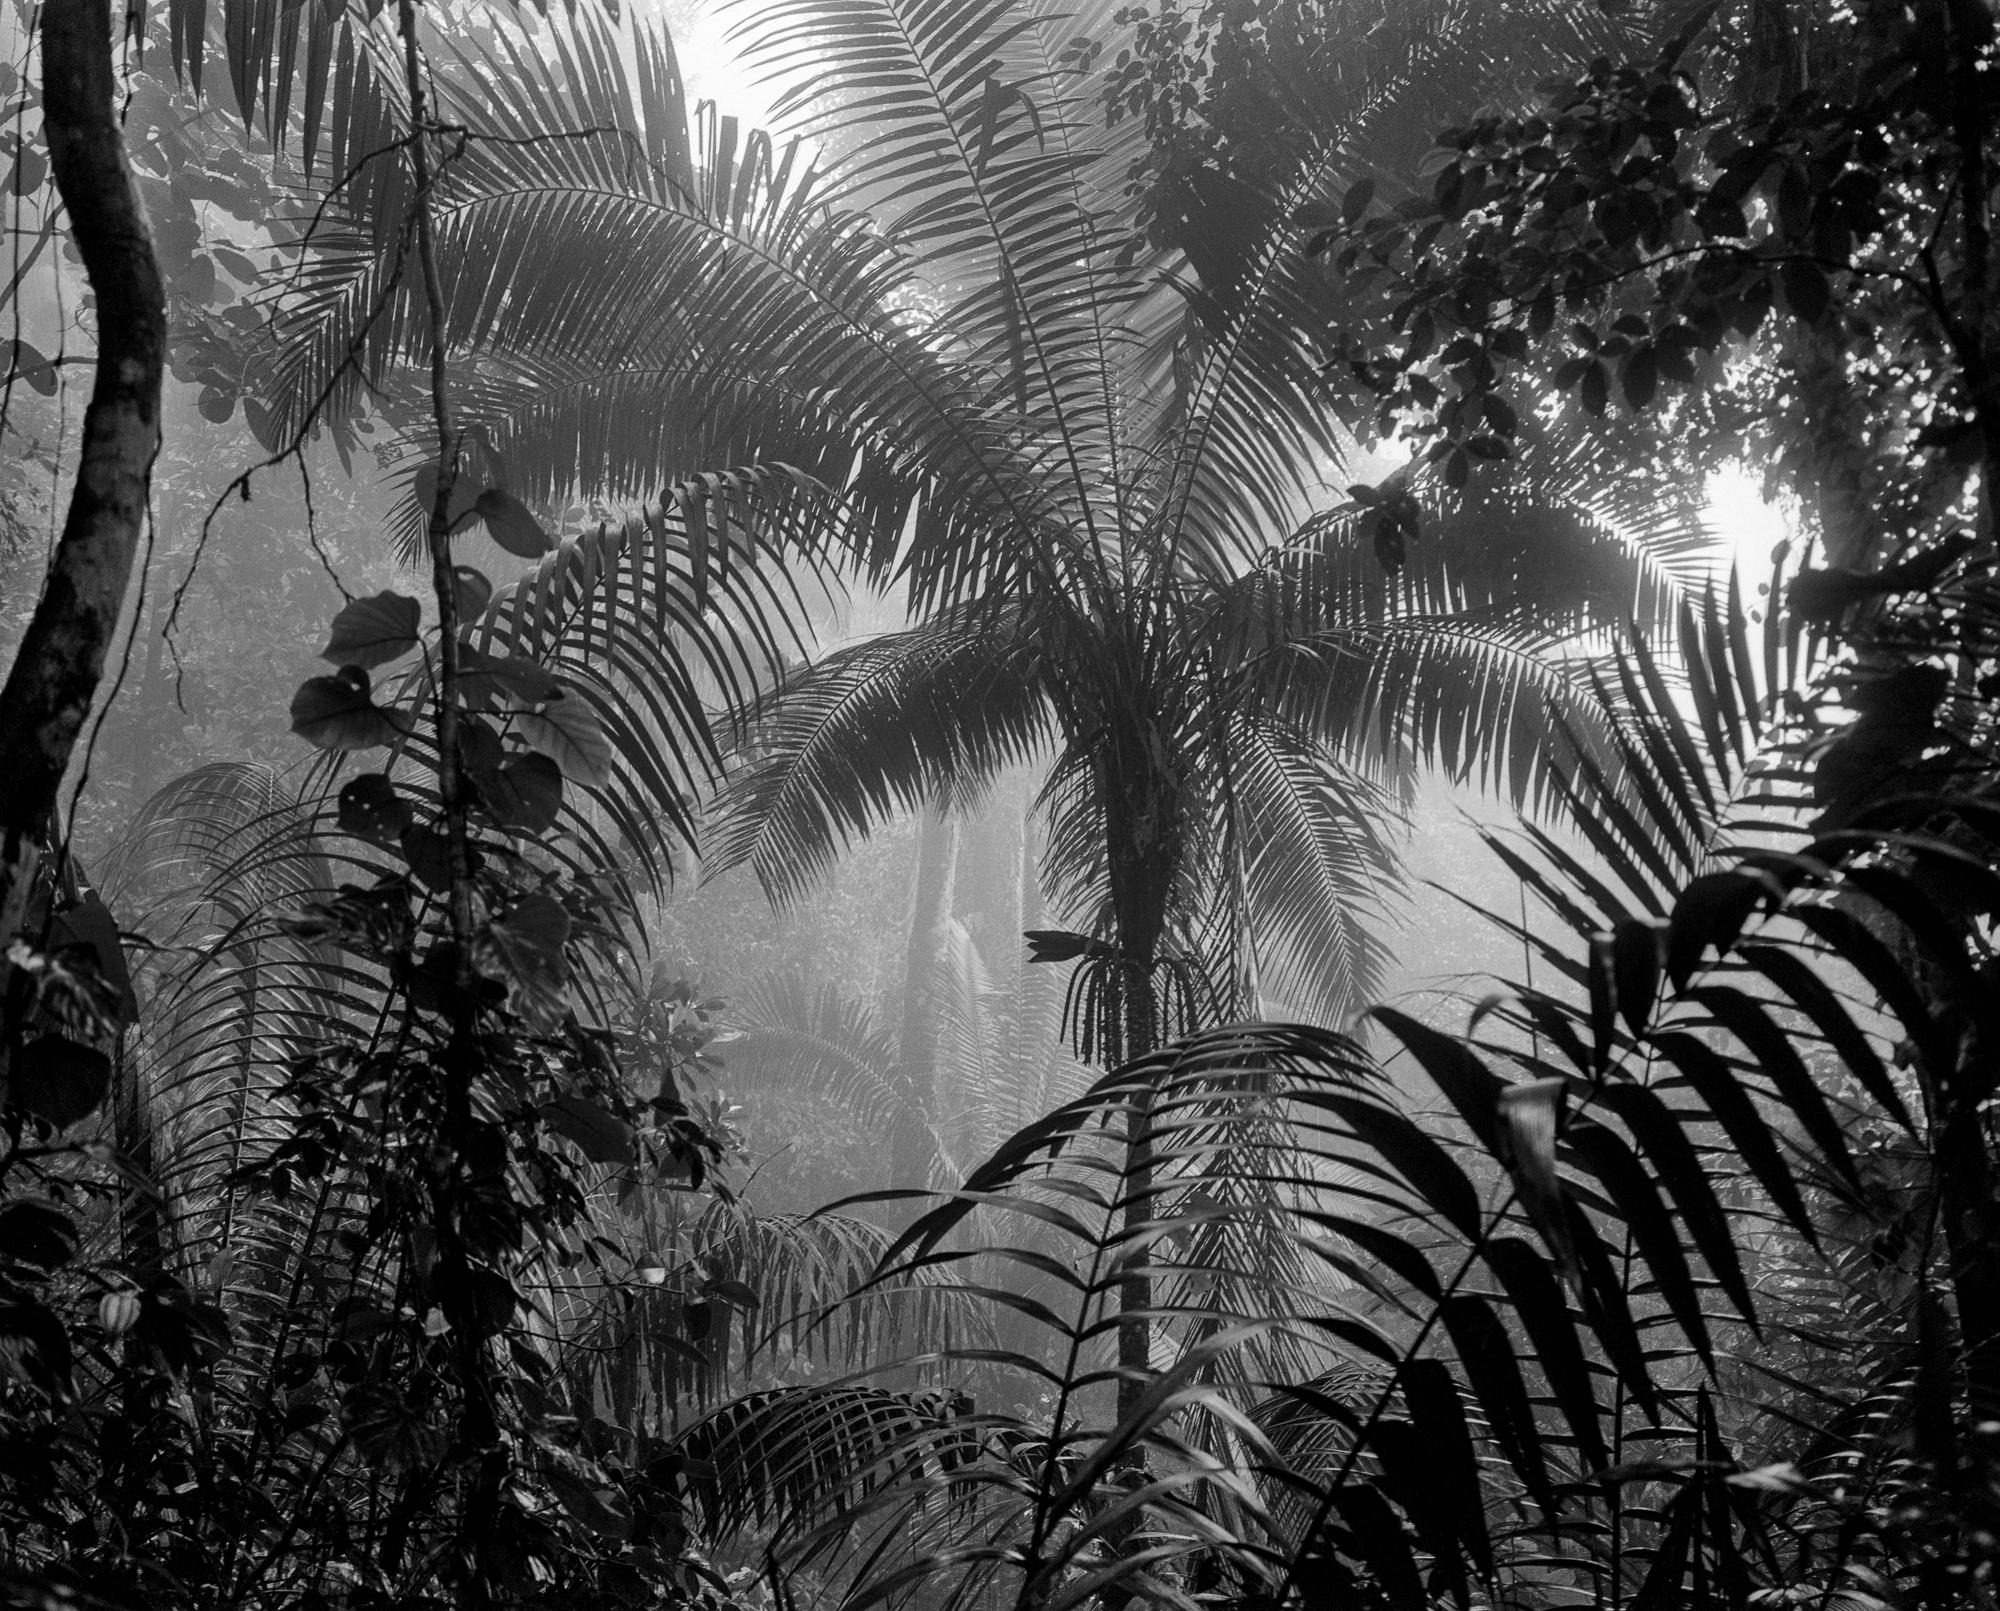 Landscape Photograph Miguel Winograd  - Bosque Húmedo Tropical II Nuqui, de la série Bosques. I. A B.